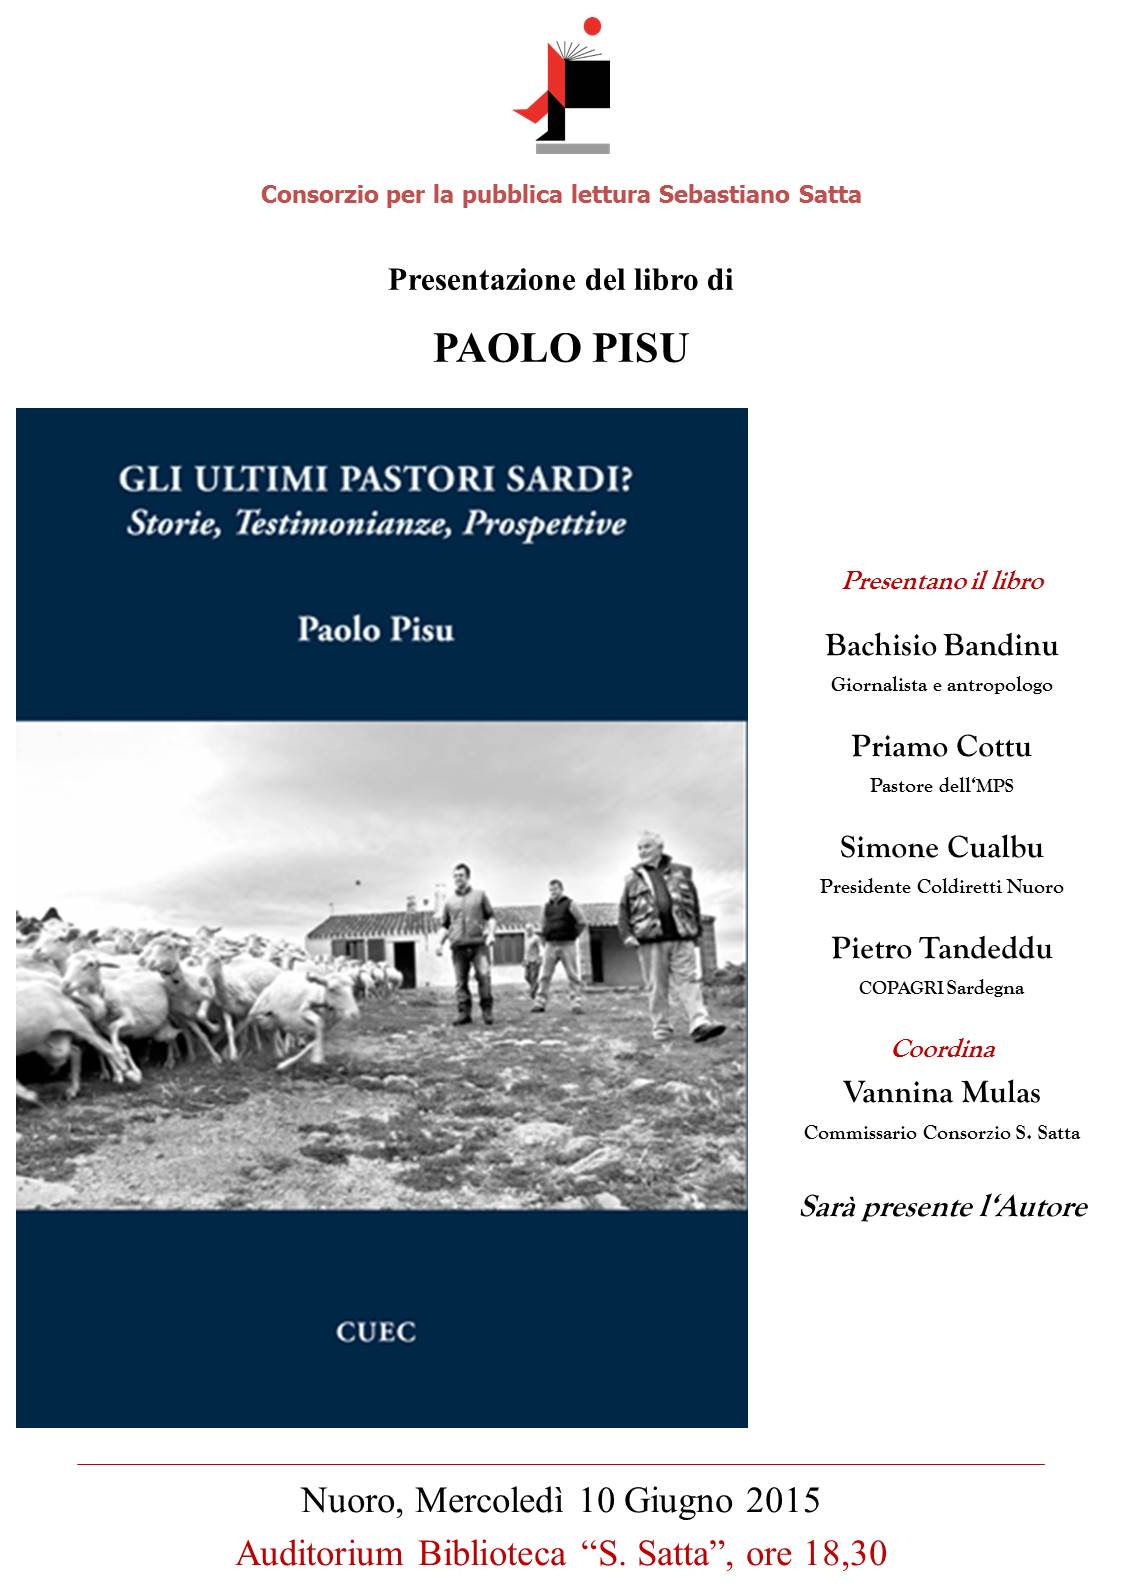 Mercoledì alla biblioteca Satta presentazione del libro "Gli ultimi pastori sardi"